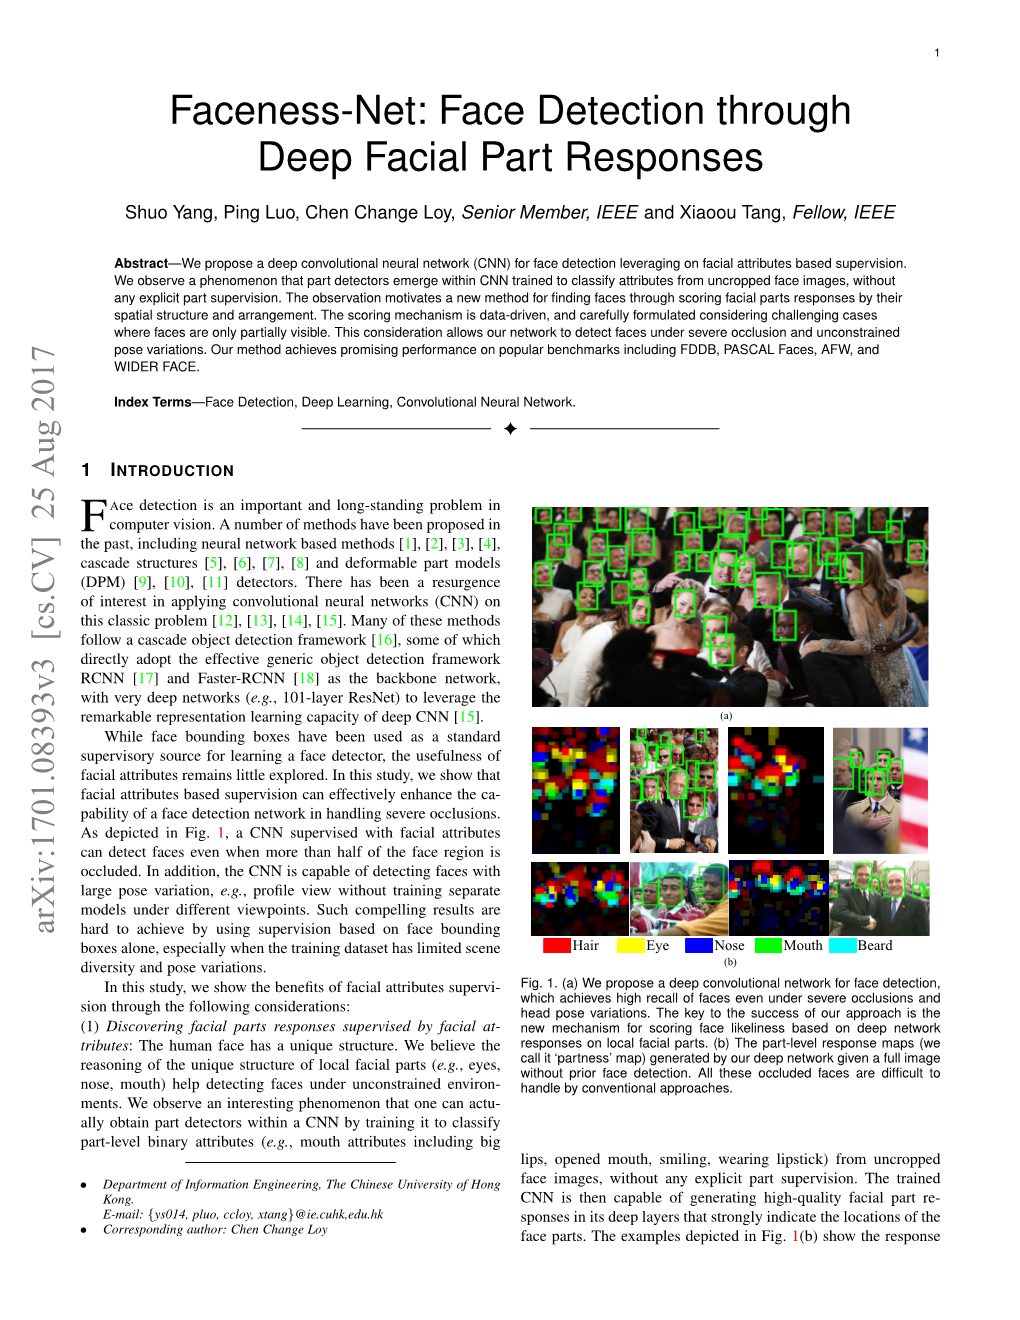 Faceness-Net: Face Detection Through Deep Facial Part Responses